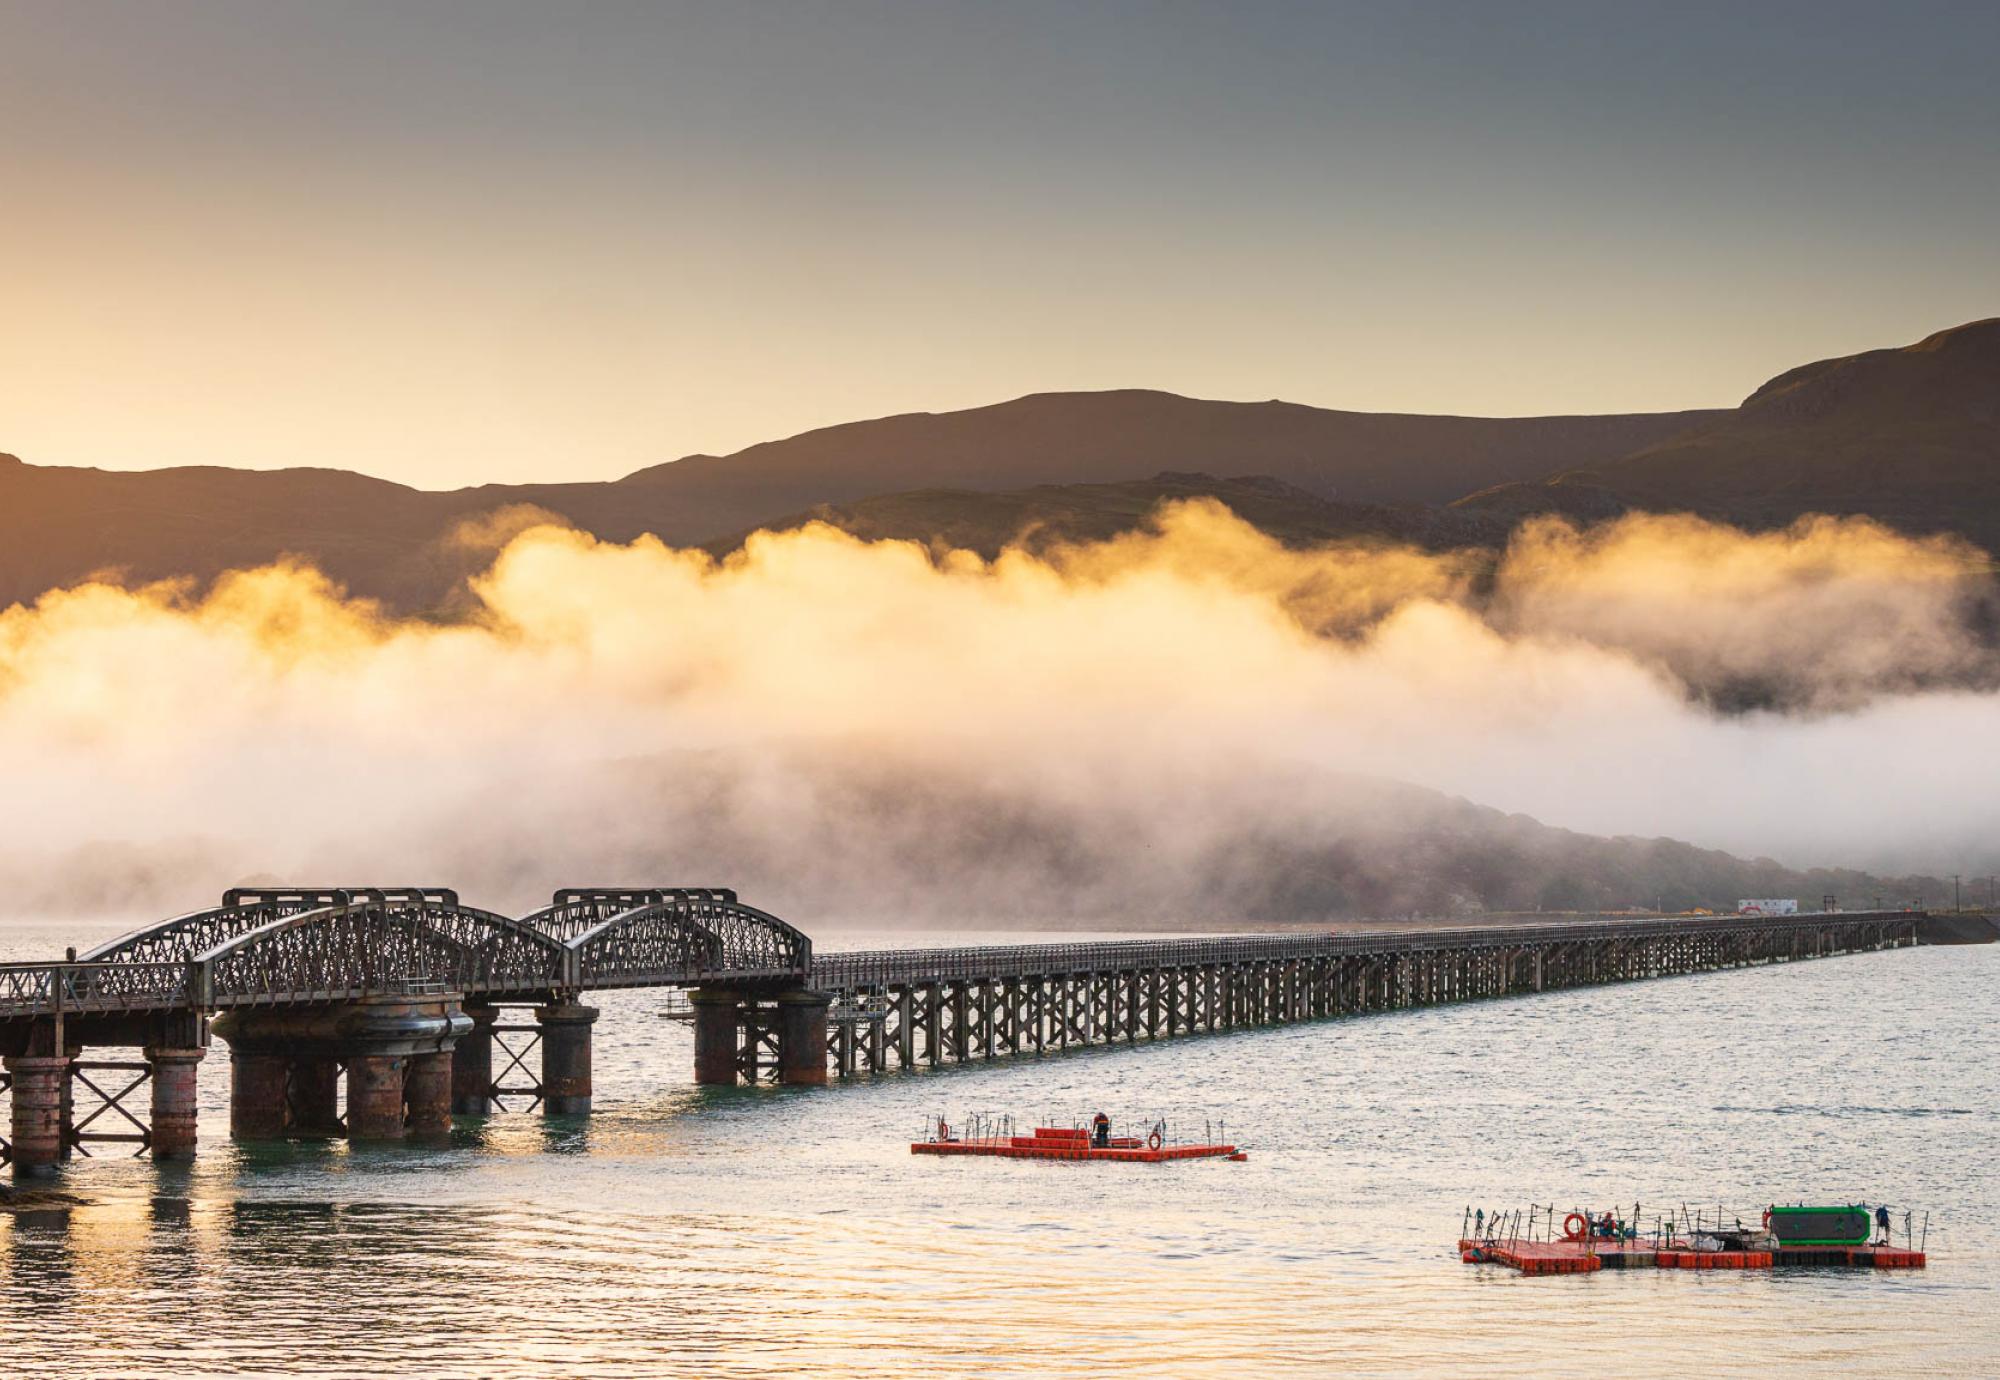 Barmouth Viaduct clouds at dawn, via Network rail 